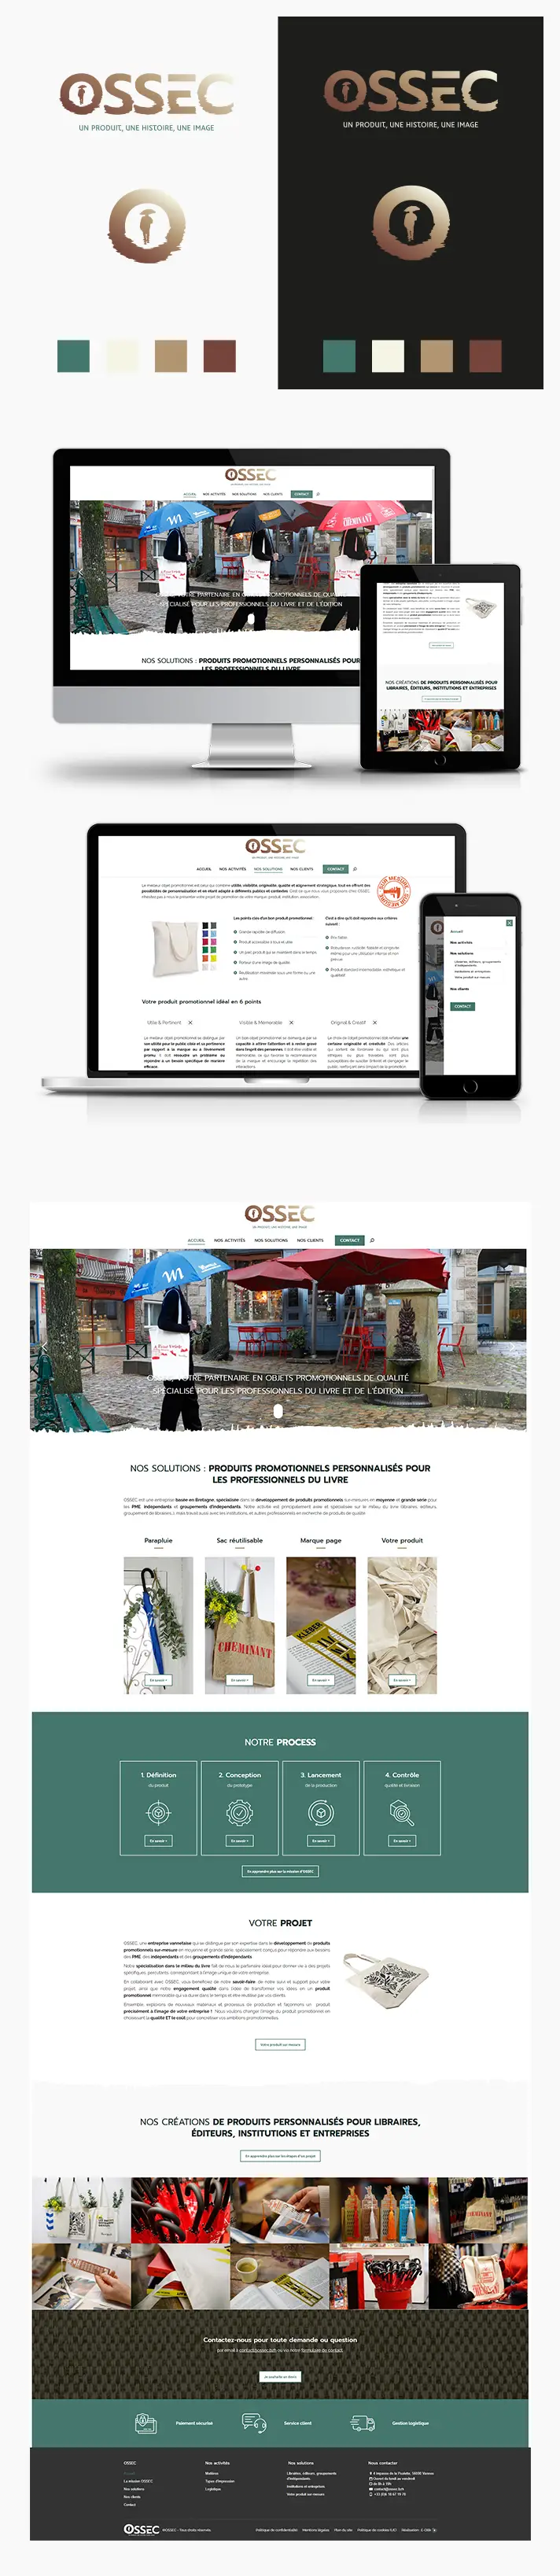 Création logo et site internet OSSEC